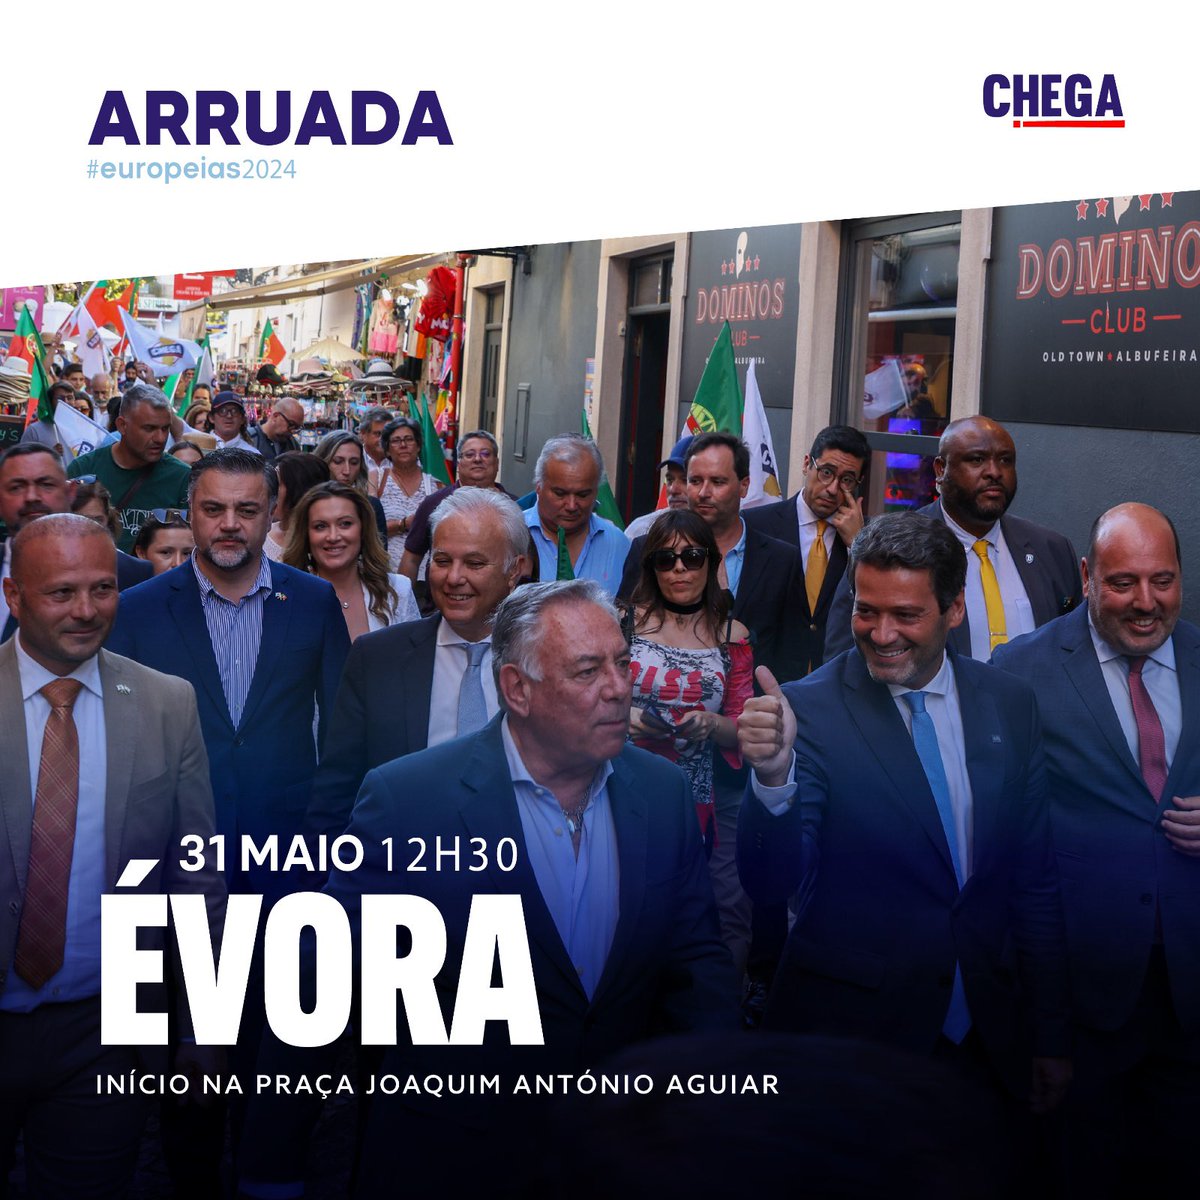 Vamos estar hoje no centro de Évora para mais uma grande arruada de campanha eleitoral das Europeias! ✌️ Vamos mostrar a nossa força nas ruas! Contamos contigo. Até já! 🇵🇹 #CHEGA